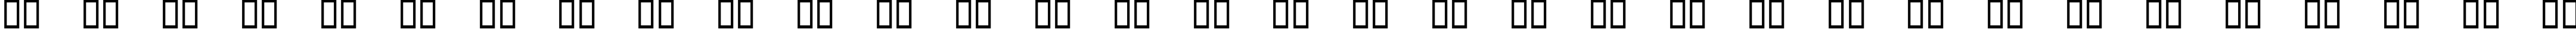 Пример написания русского алфавита шрифтом Lucida Stars